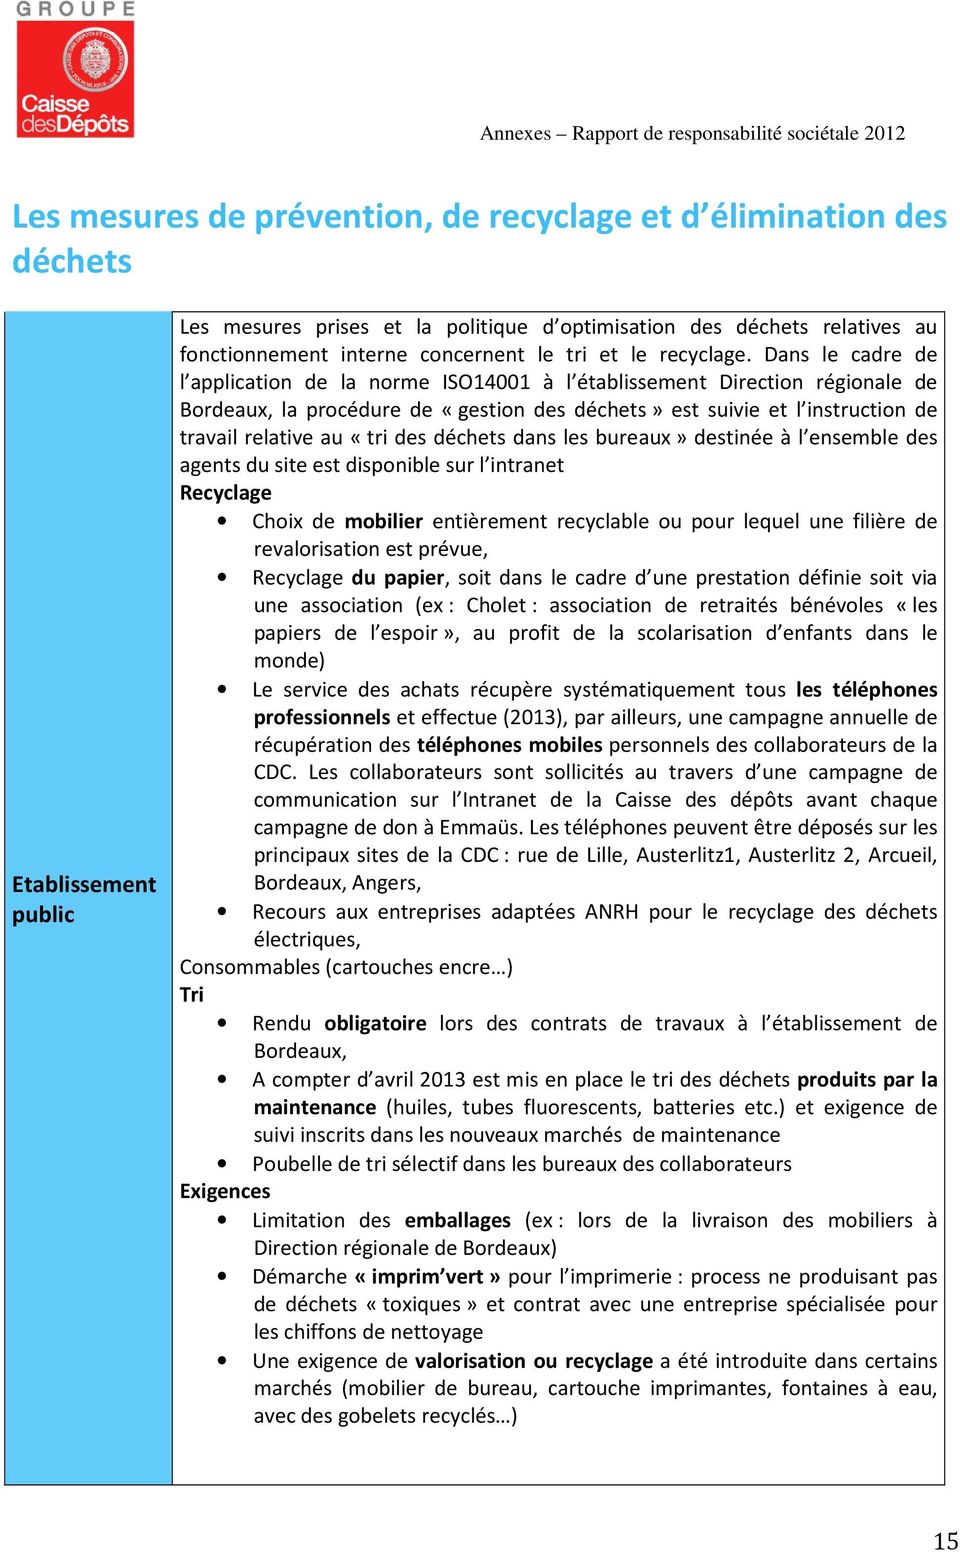 Dans le cadre de l application de la norme ISO14001 à l établissement Direction régionale de Bordeaux, la procédure de «gestion des déchets» est suivie et l instruction de travail relative au «tri